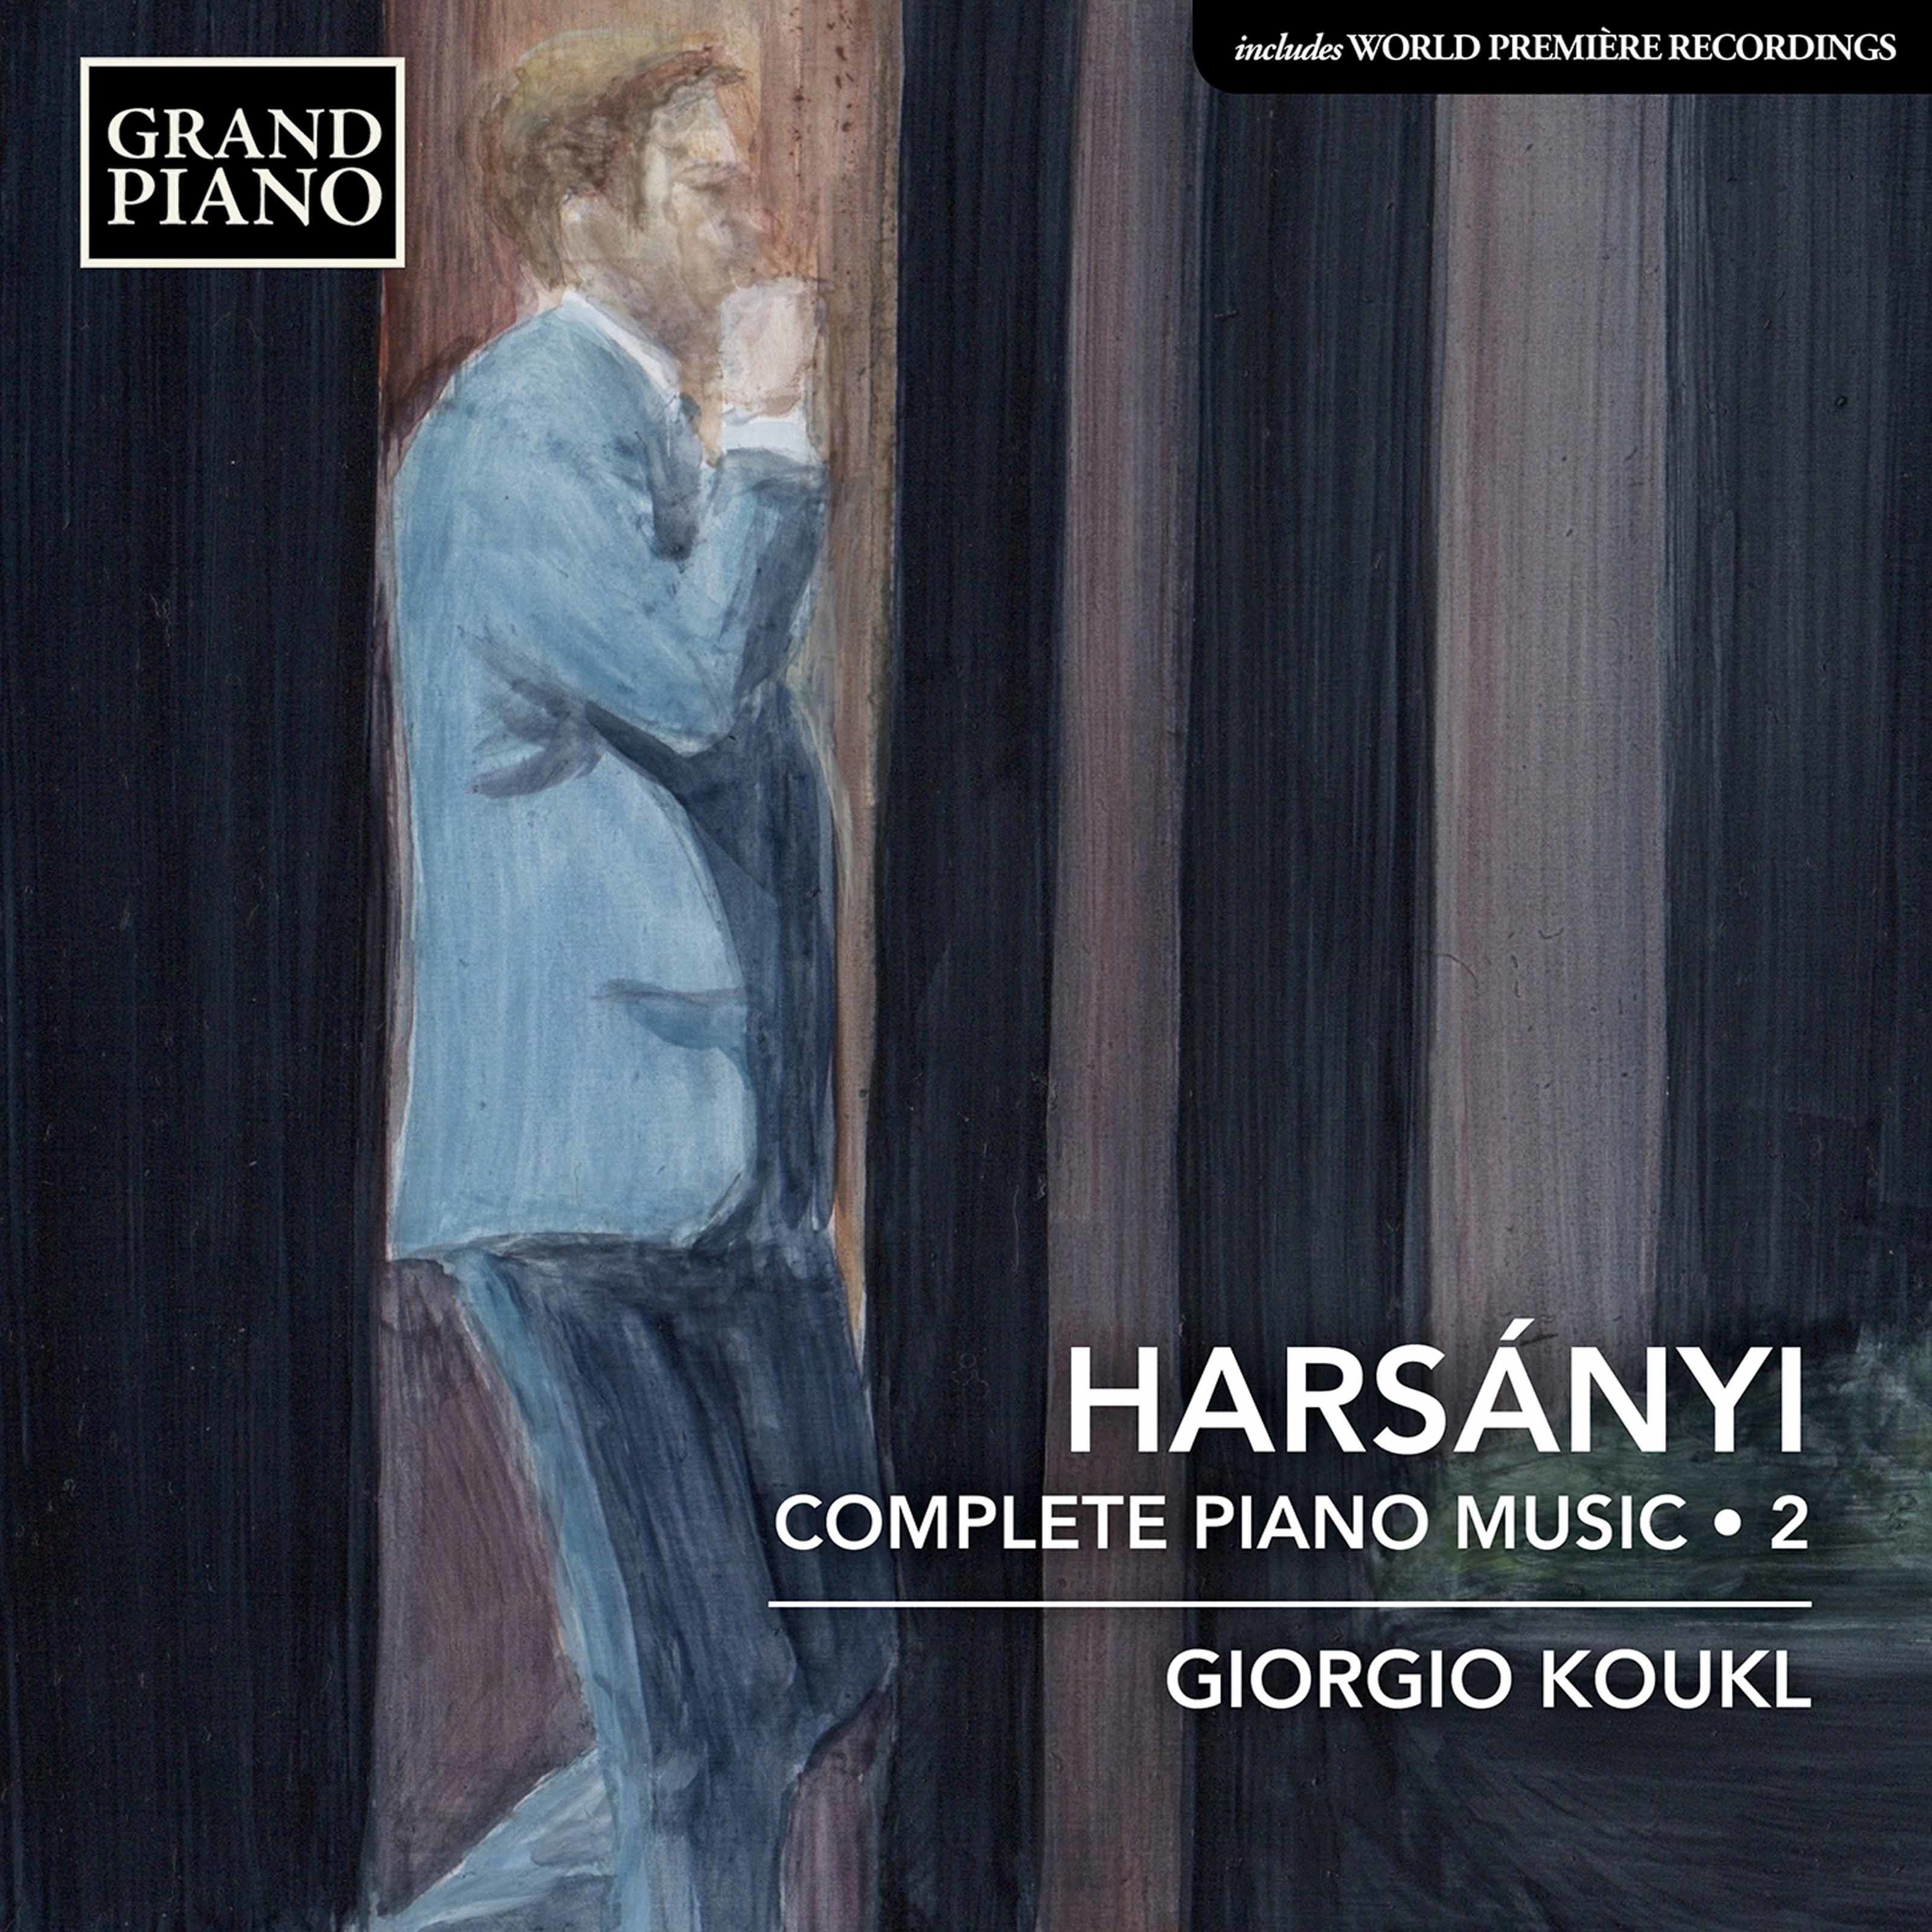 Giorgio Koukl - Harsanyi: Complete Piano Works, Vol. 2 (2020) [FLAC 24bit/96kHz]